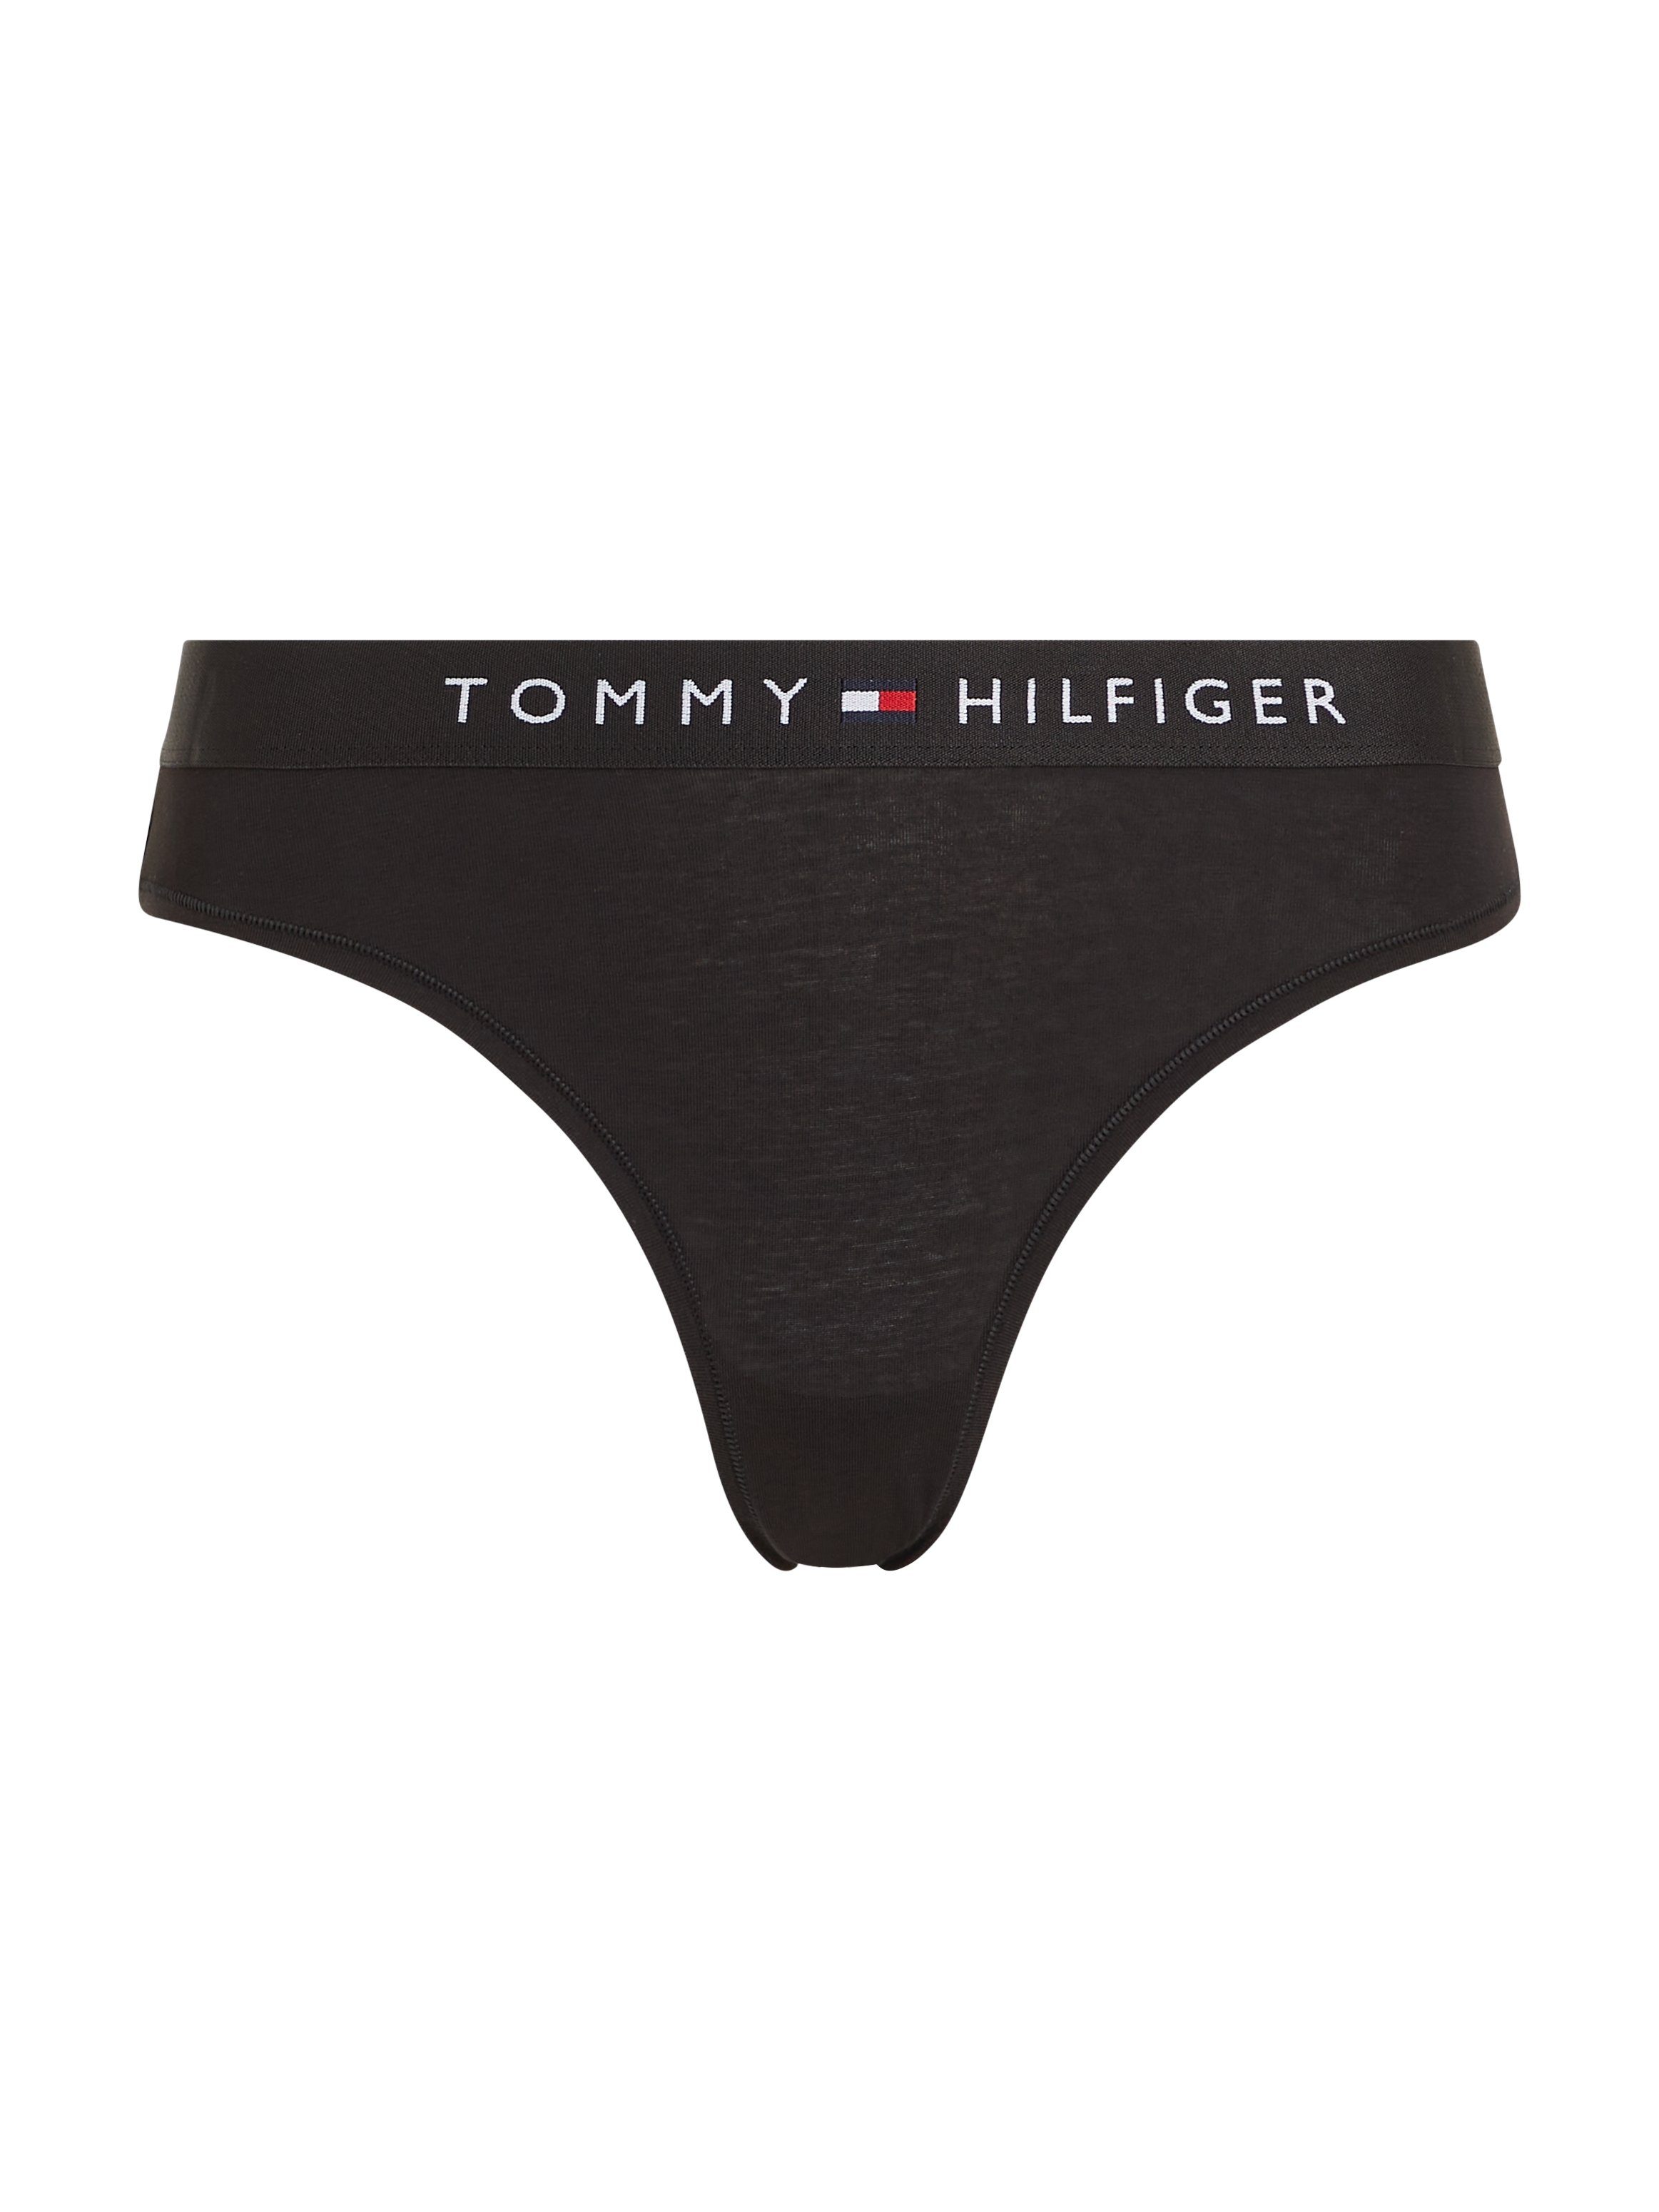 Tommy Hilfiger Underwear BIKINI Slip Markenlabel mit Tommy Black Hilfiger